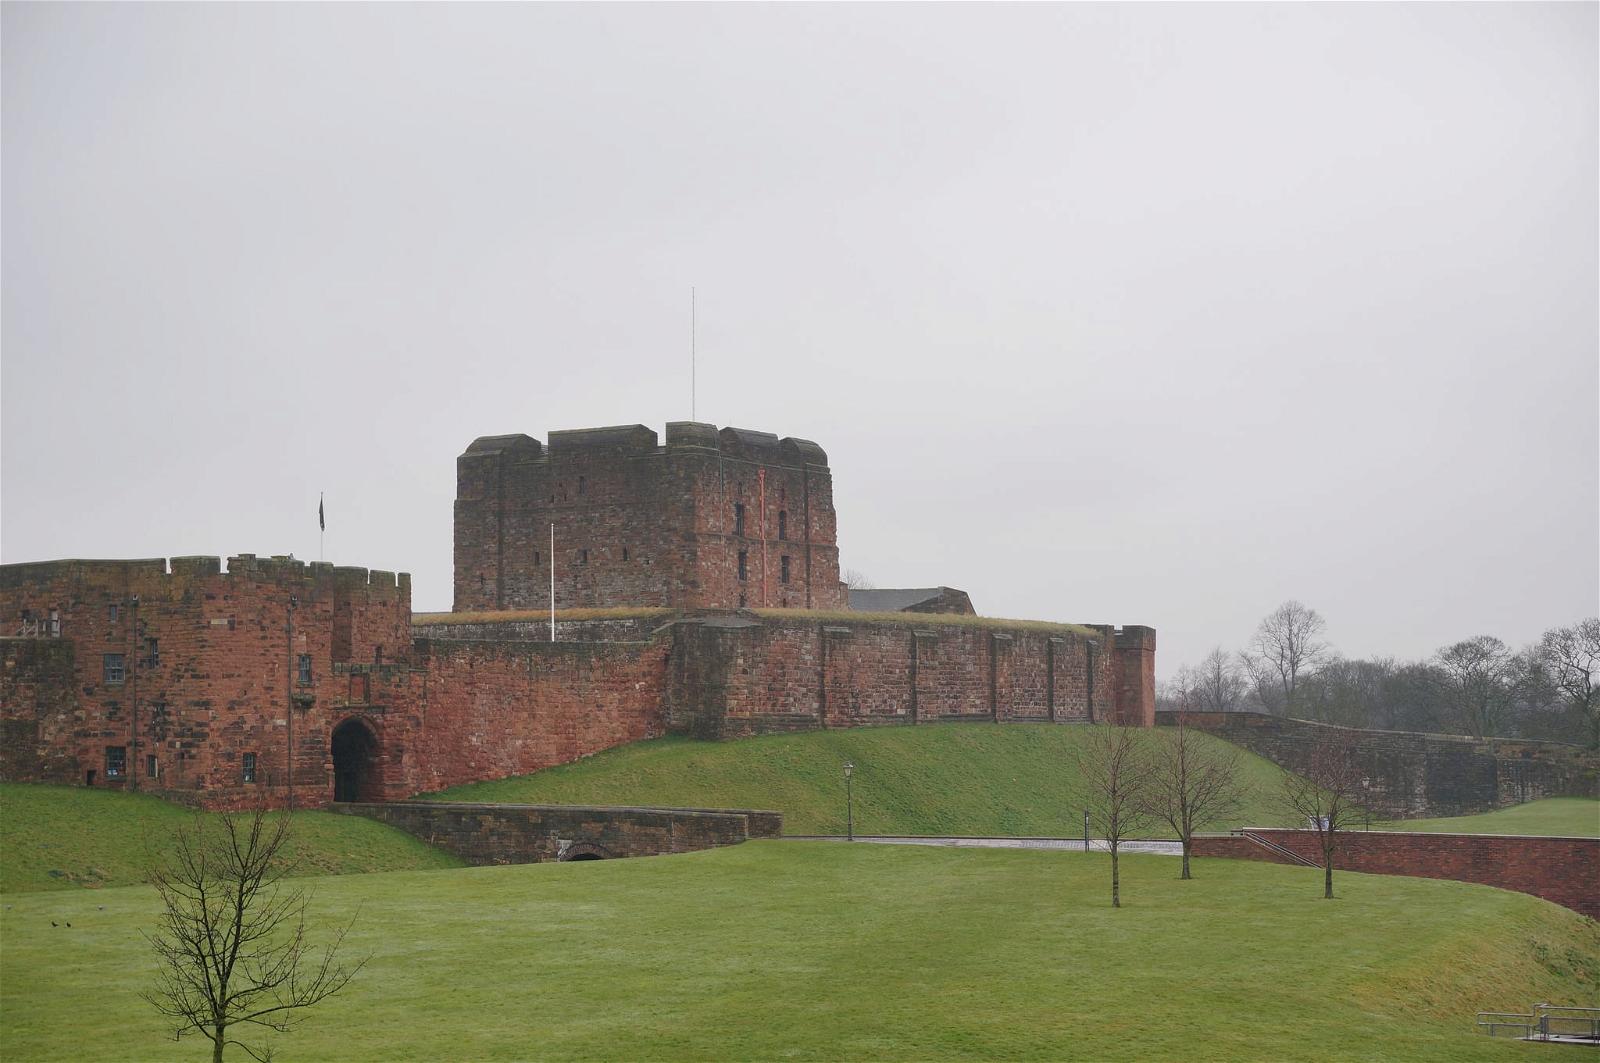 Bild av Carlisle Castle. castle carlisle file:md5sum=908c8bc5047d86c9d51cb7e162e7d1b4 file:sha1sig=beb354c67860ebbfa863e4076d045cbb567bb0f4